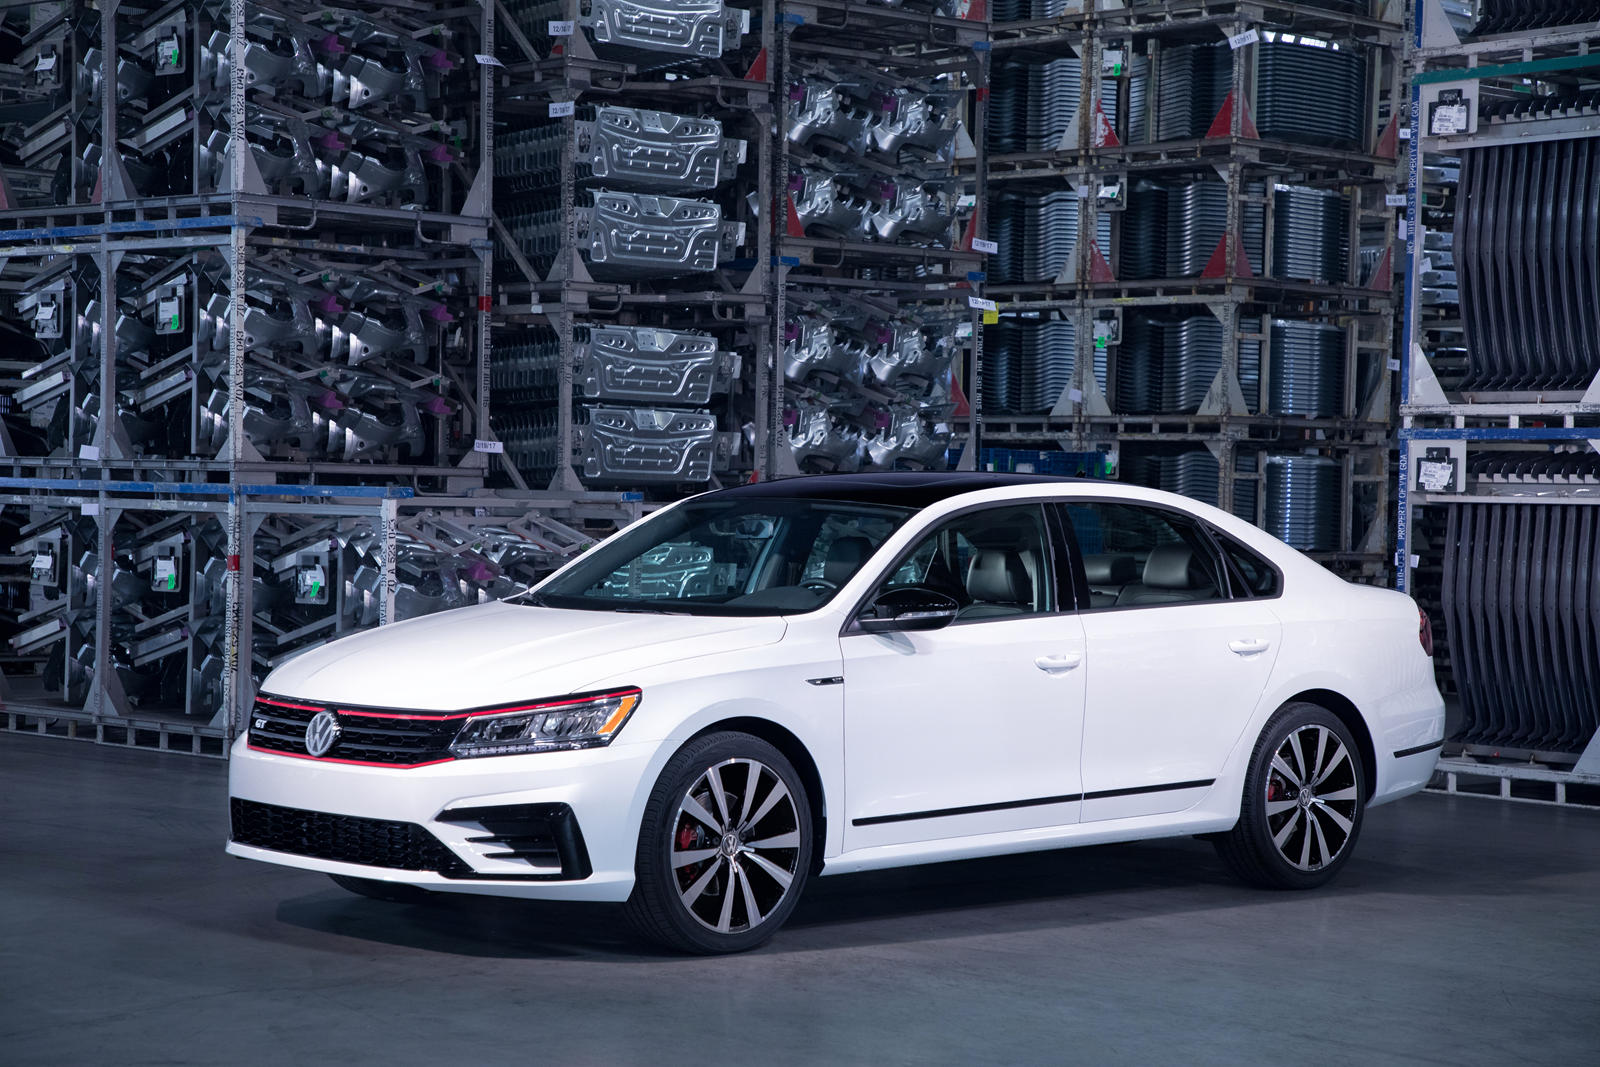 2019 Volkswagen Passat Review, Pricing, VW Passat Sedan Models